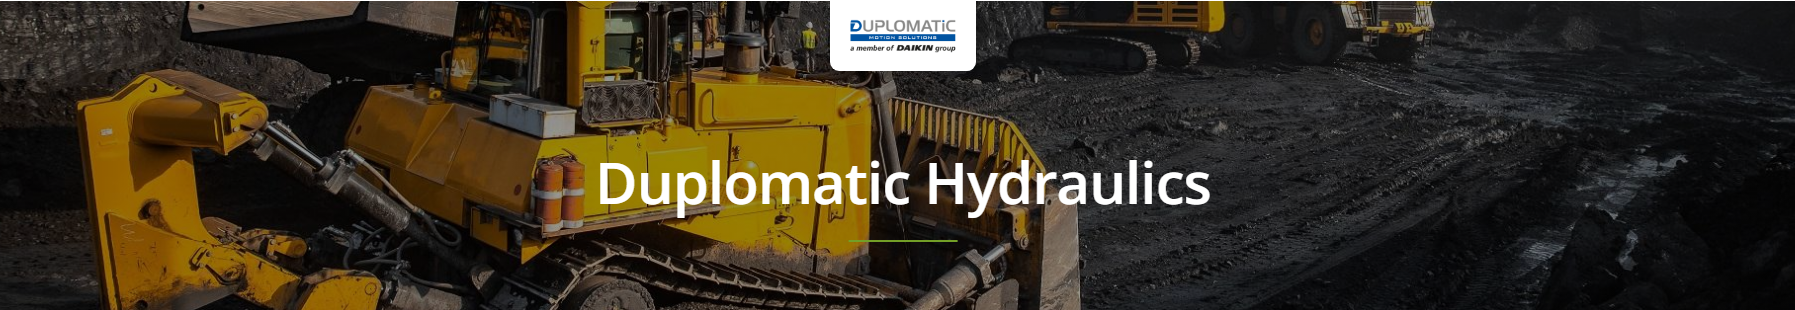 Duplomatic Hydraulic Cylinders